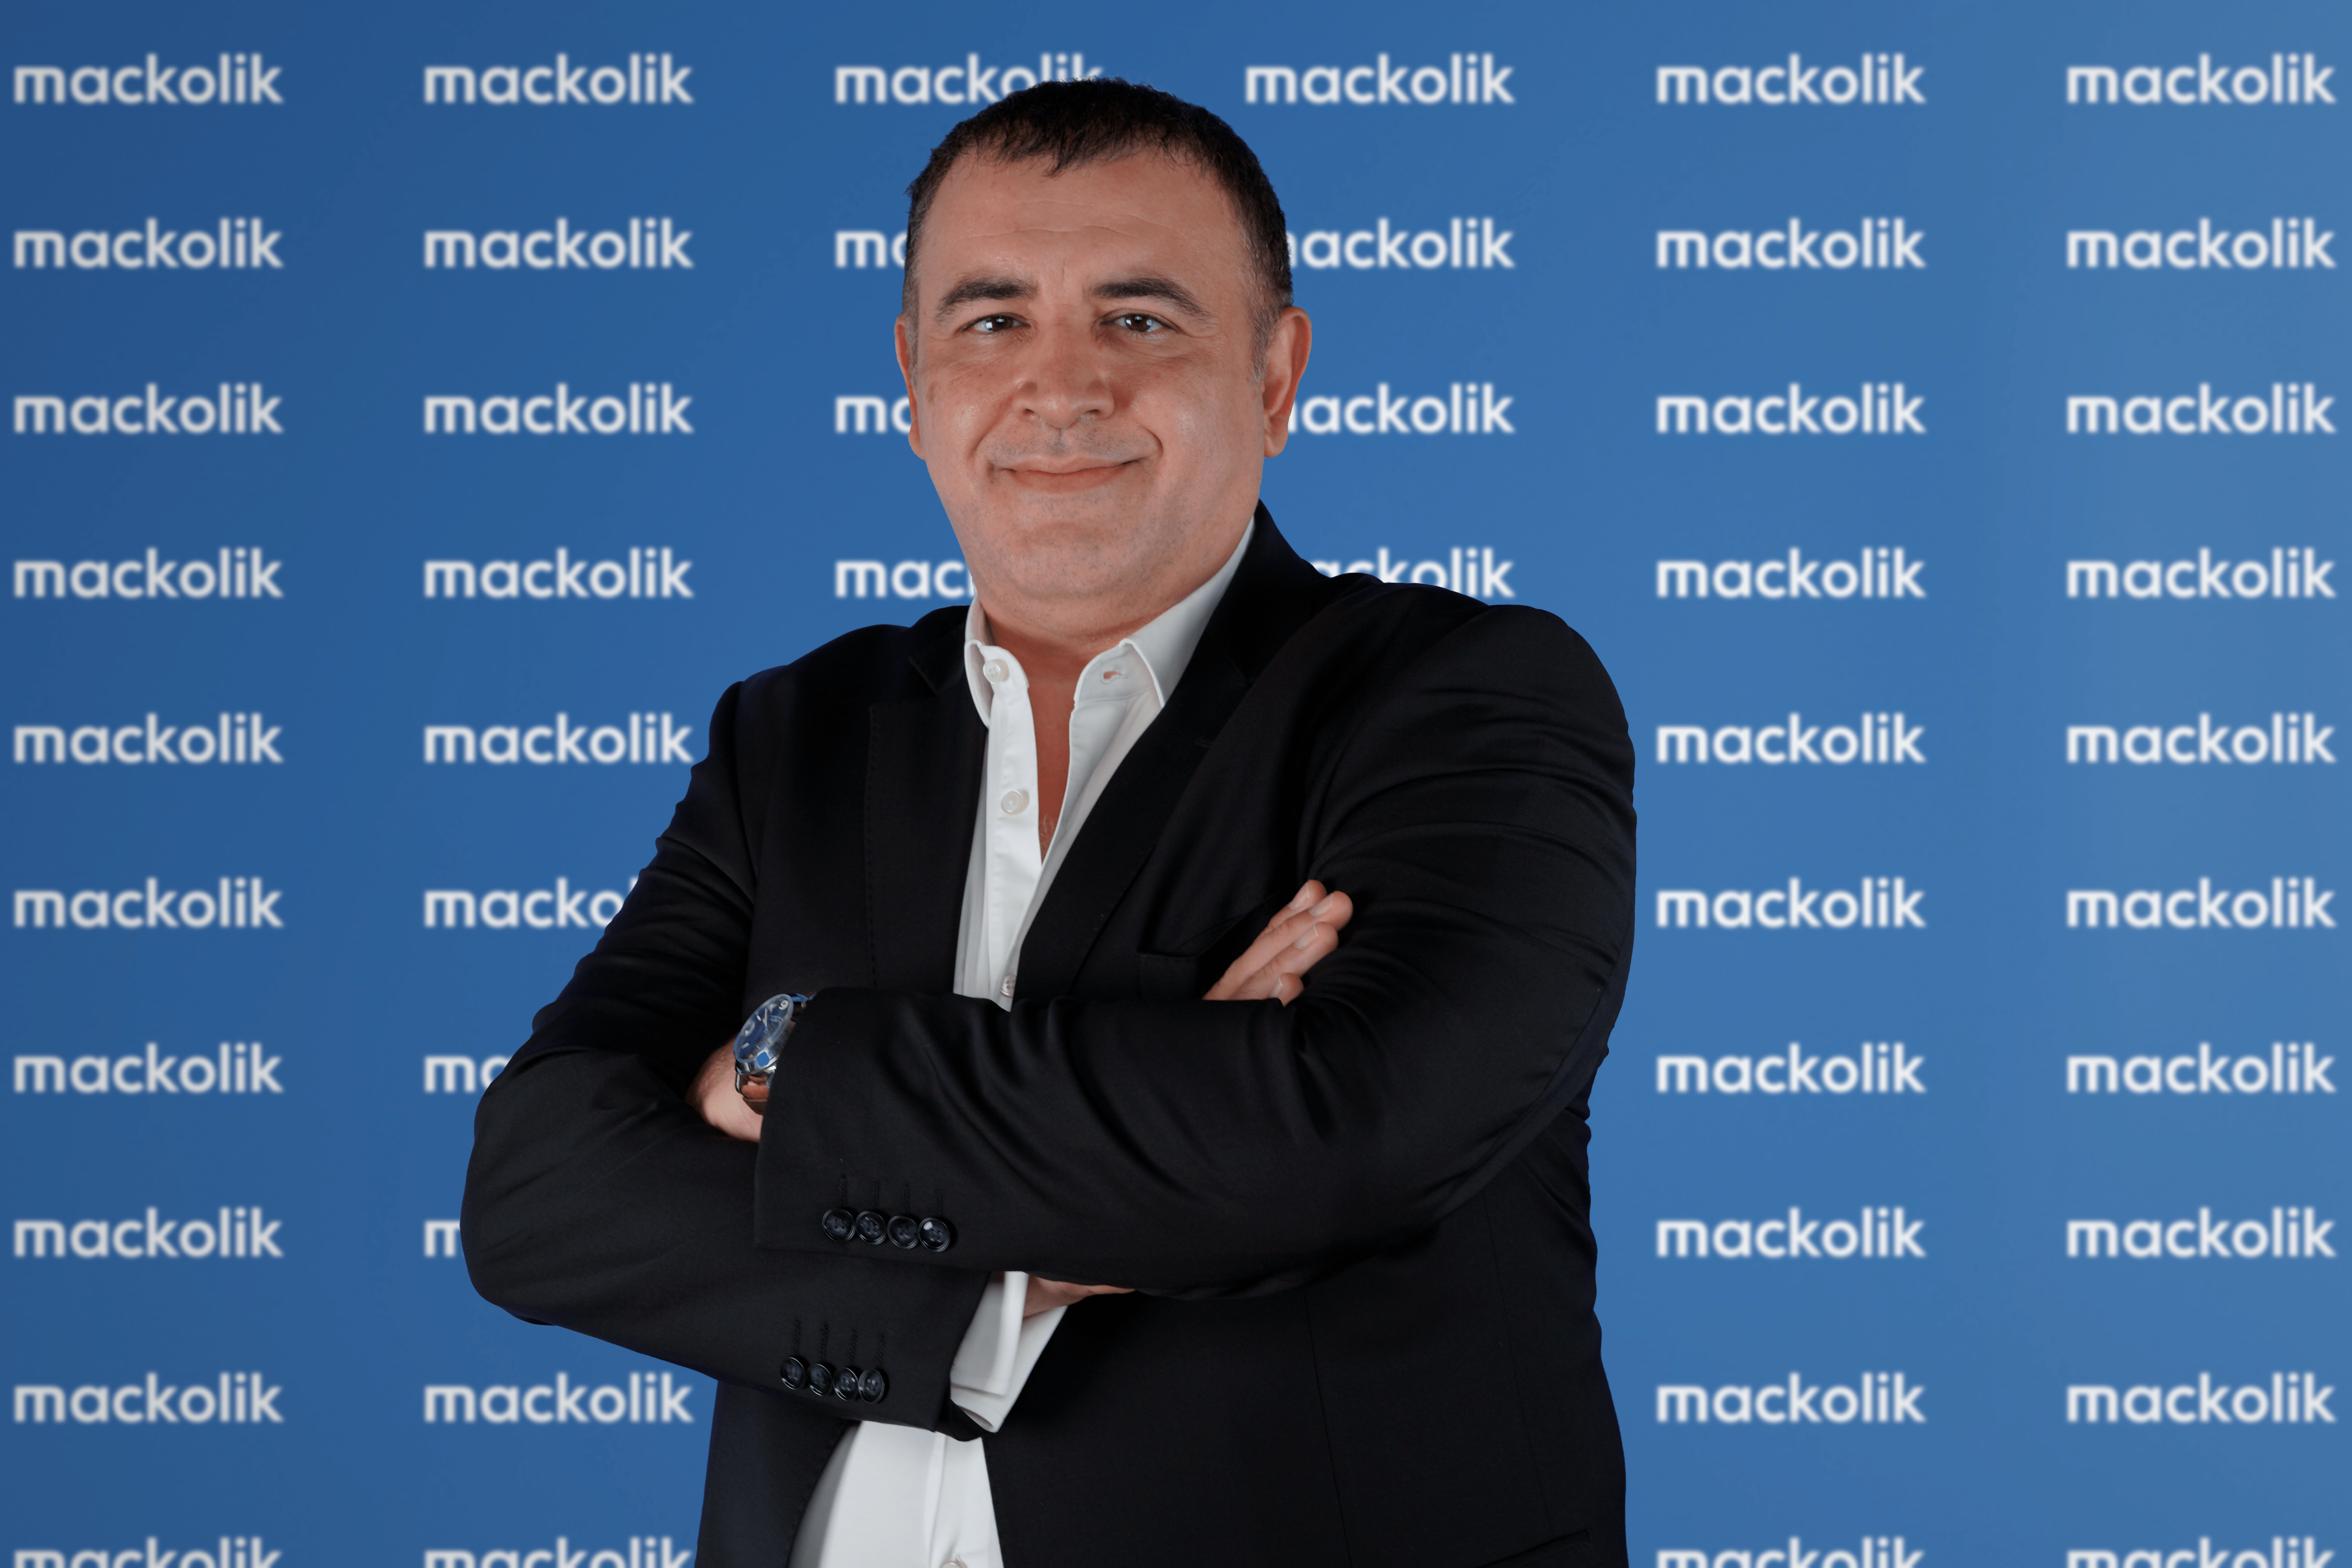 Türkiye’nin bir numaralı spor uygulaması Mackolik 19-20 Ocak’ta talep toplayarak halka arz oluyor